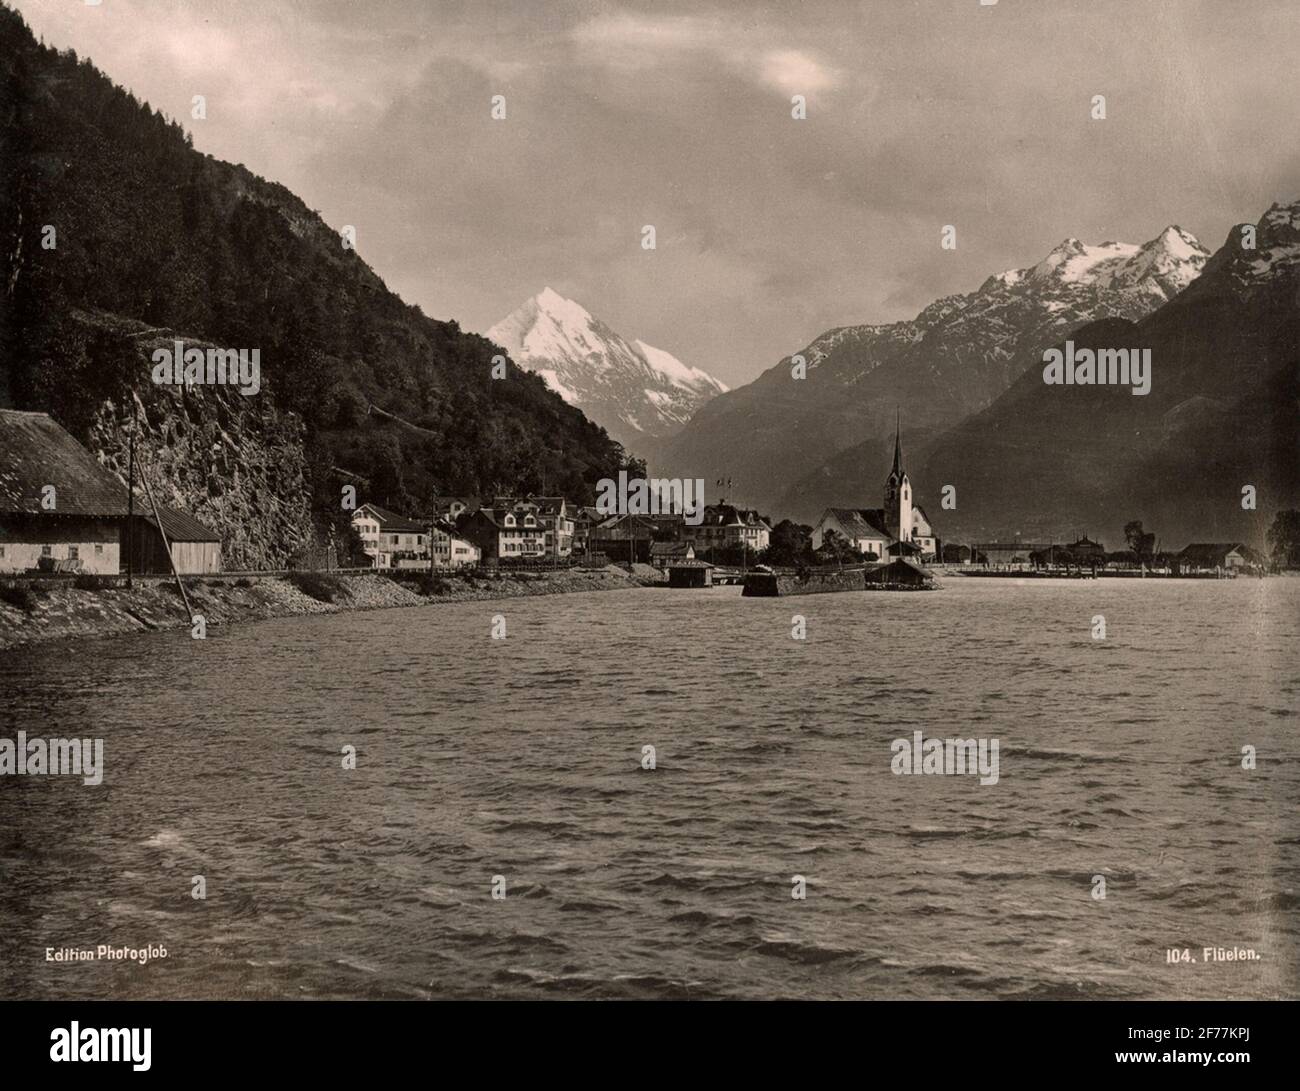 Flüelen, Svizzera sul lago di Lucerna (Vierwaldstättersee). "Edizione PhotoGob n. 104". Foto Stock